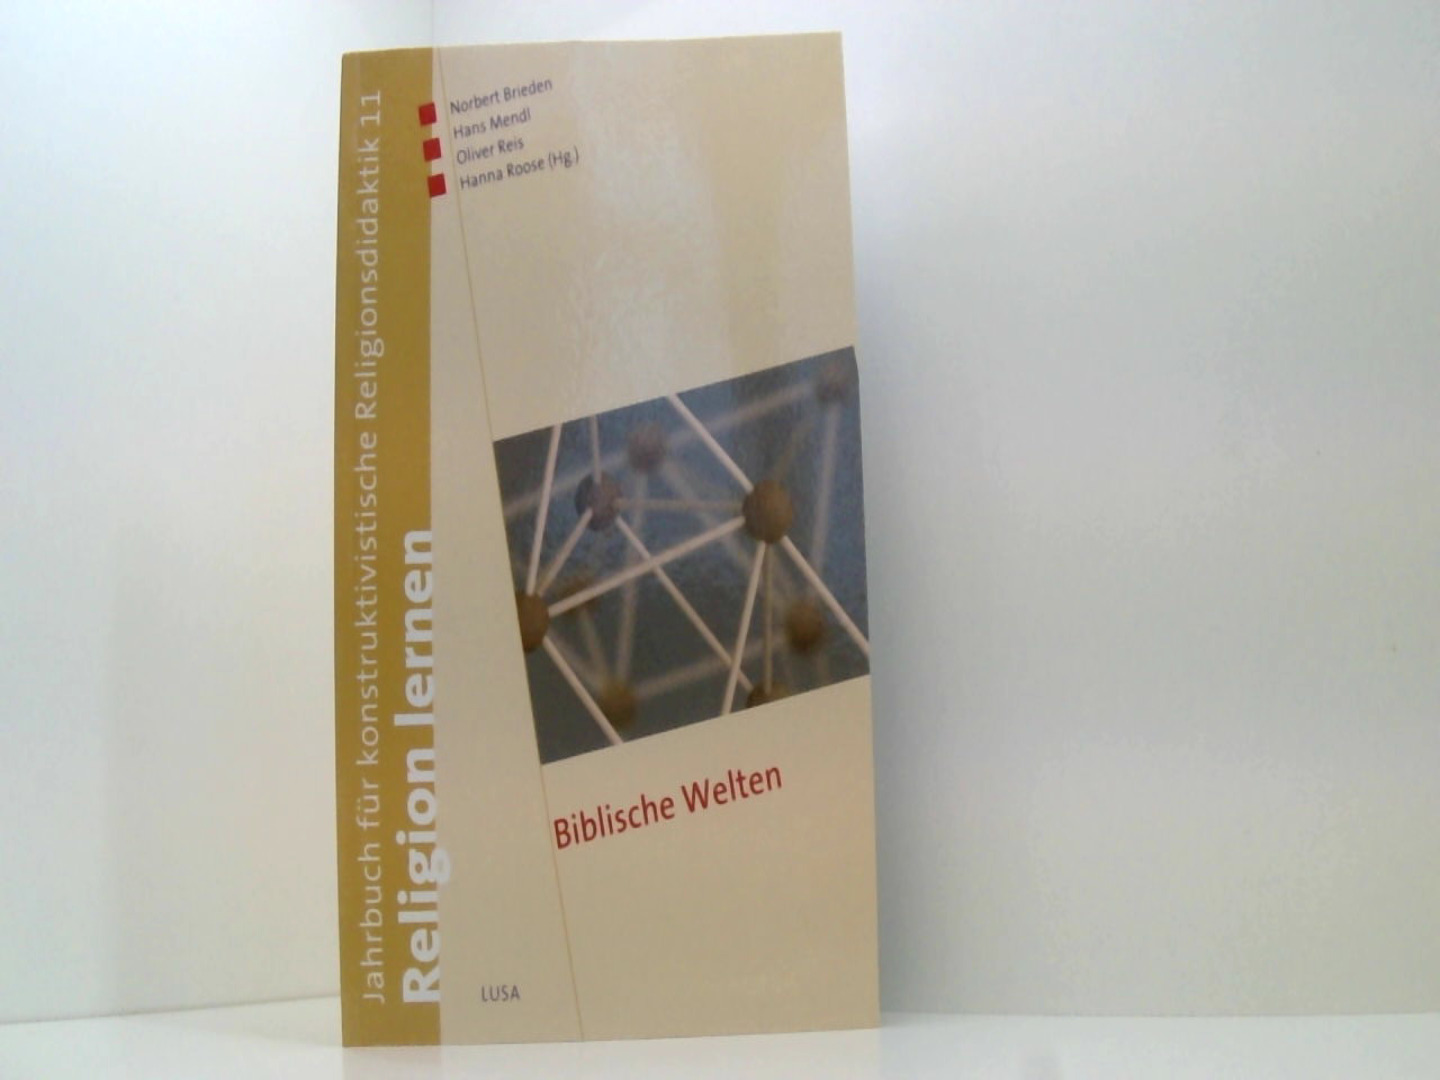 Biblische Welten (Religion lernen. Jahrbuch für konstruktivistische Religionsdidaktik) - Brieden, Norbert, Hans Mendl Oliver Reis u. a.